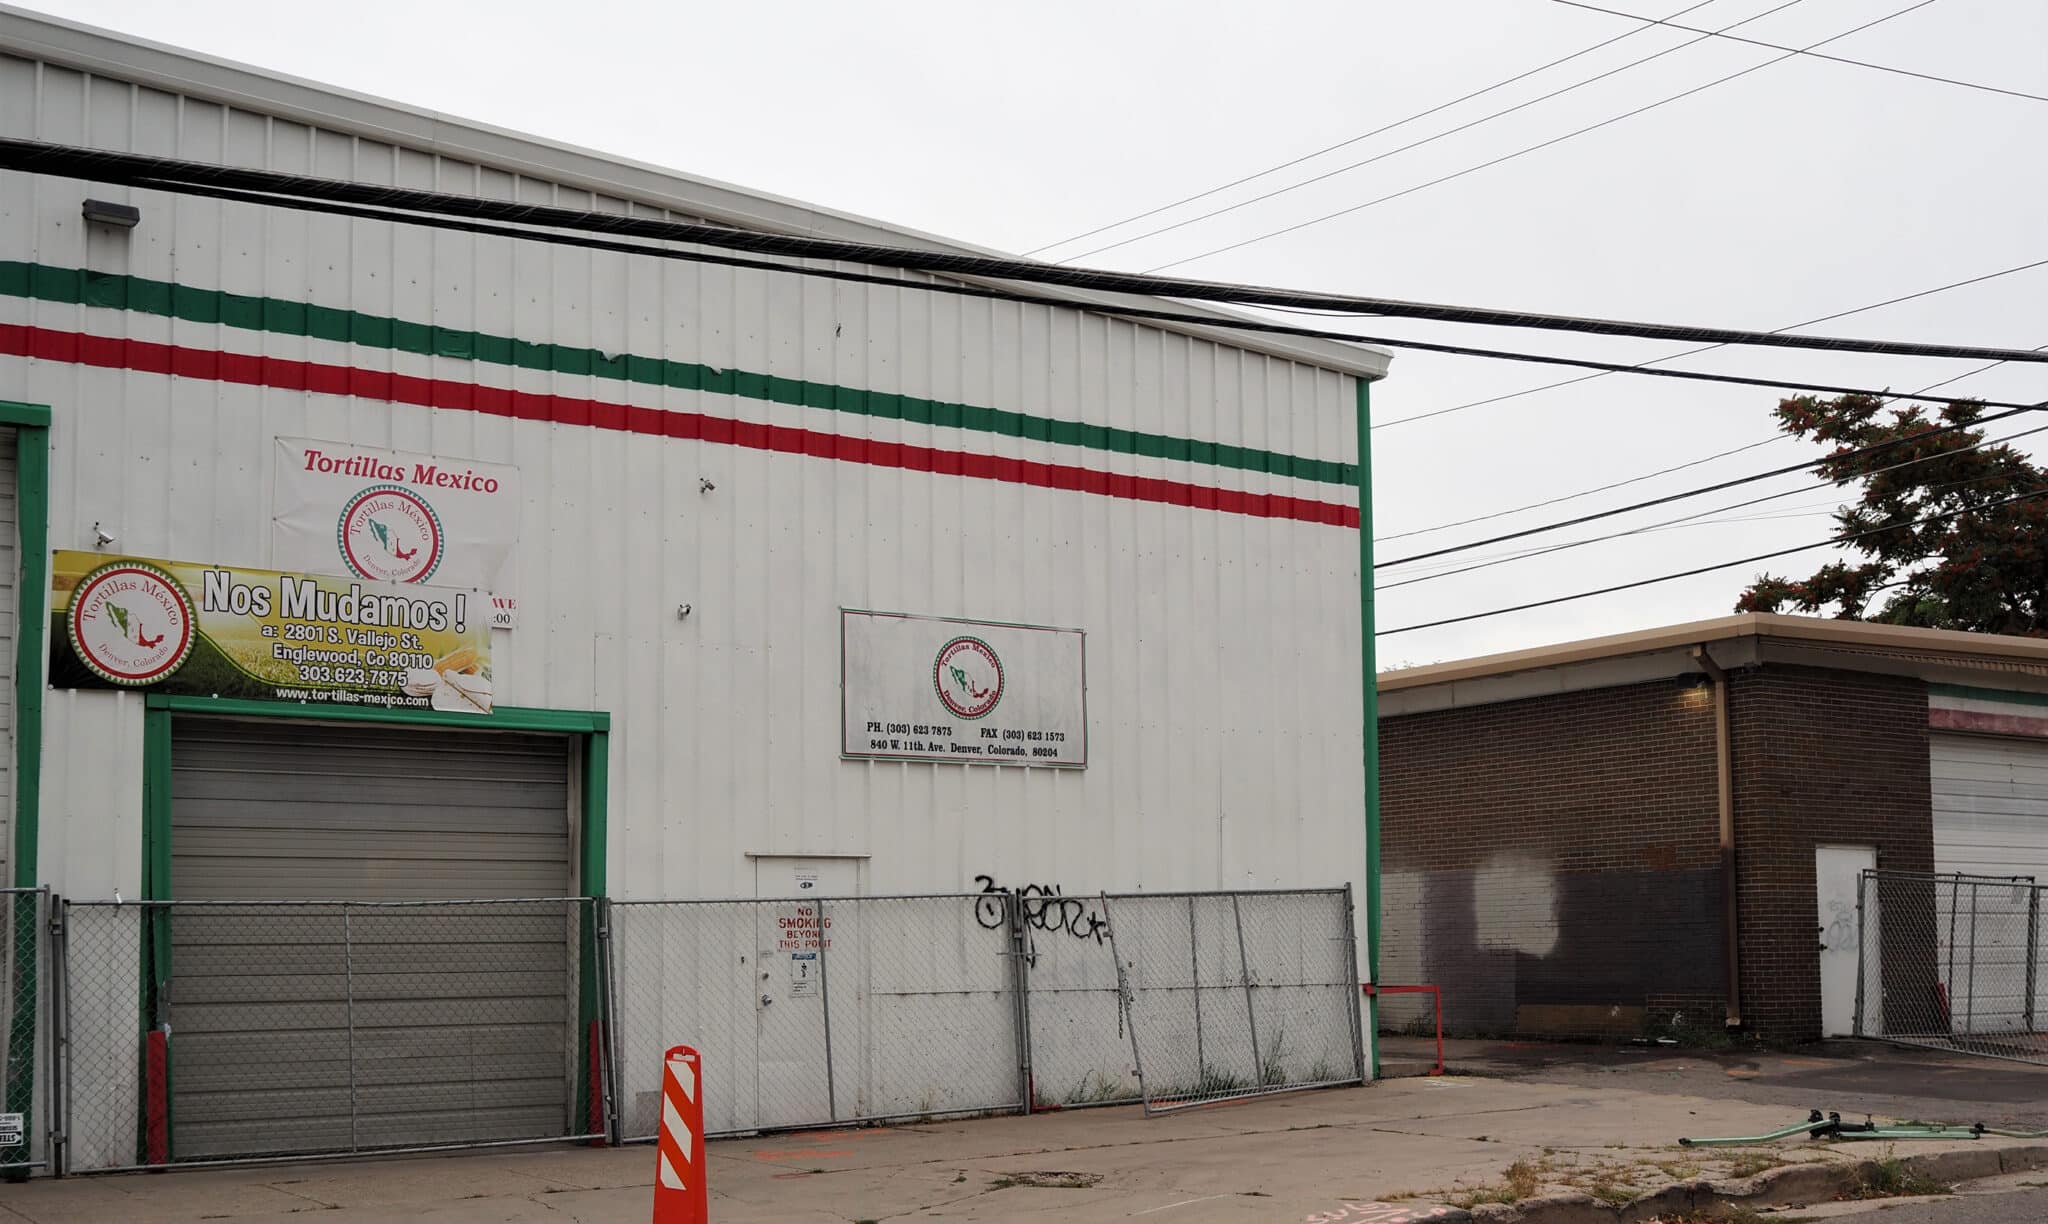 Apartment developer buys Denver site of former taco factory